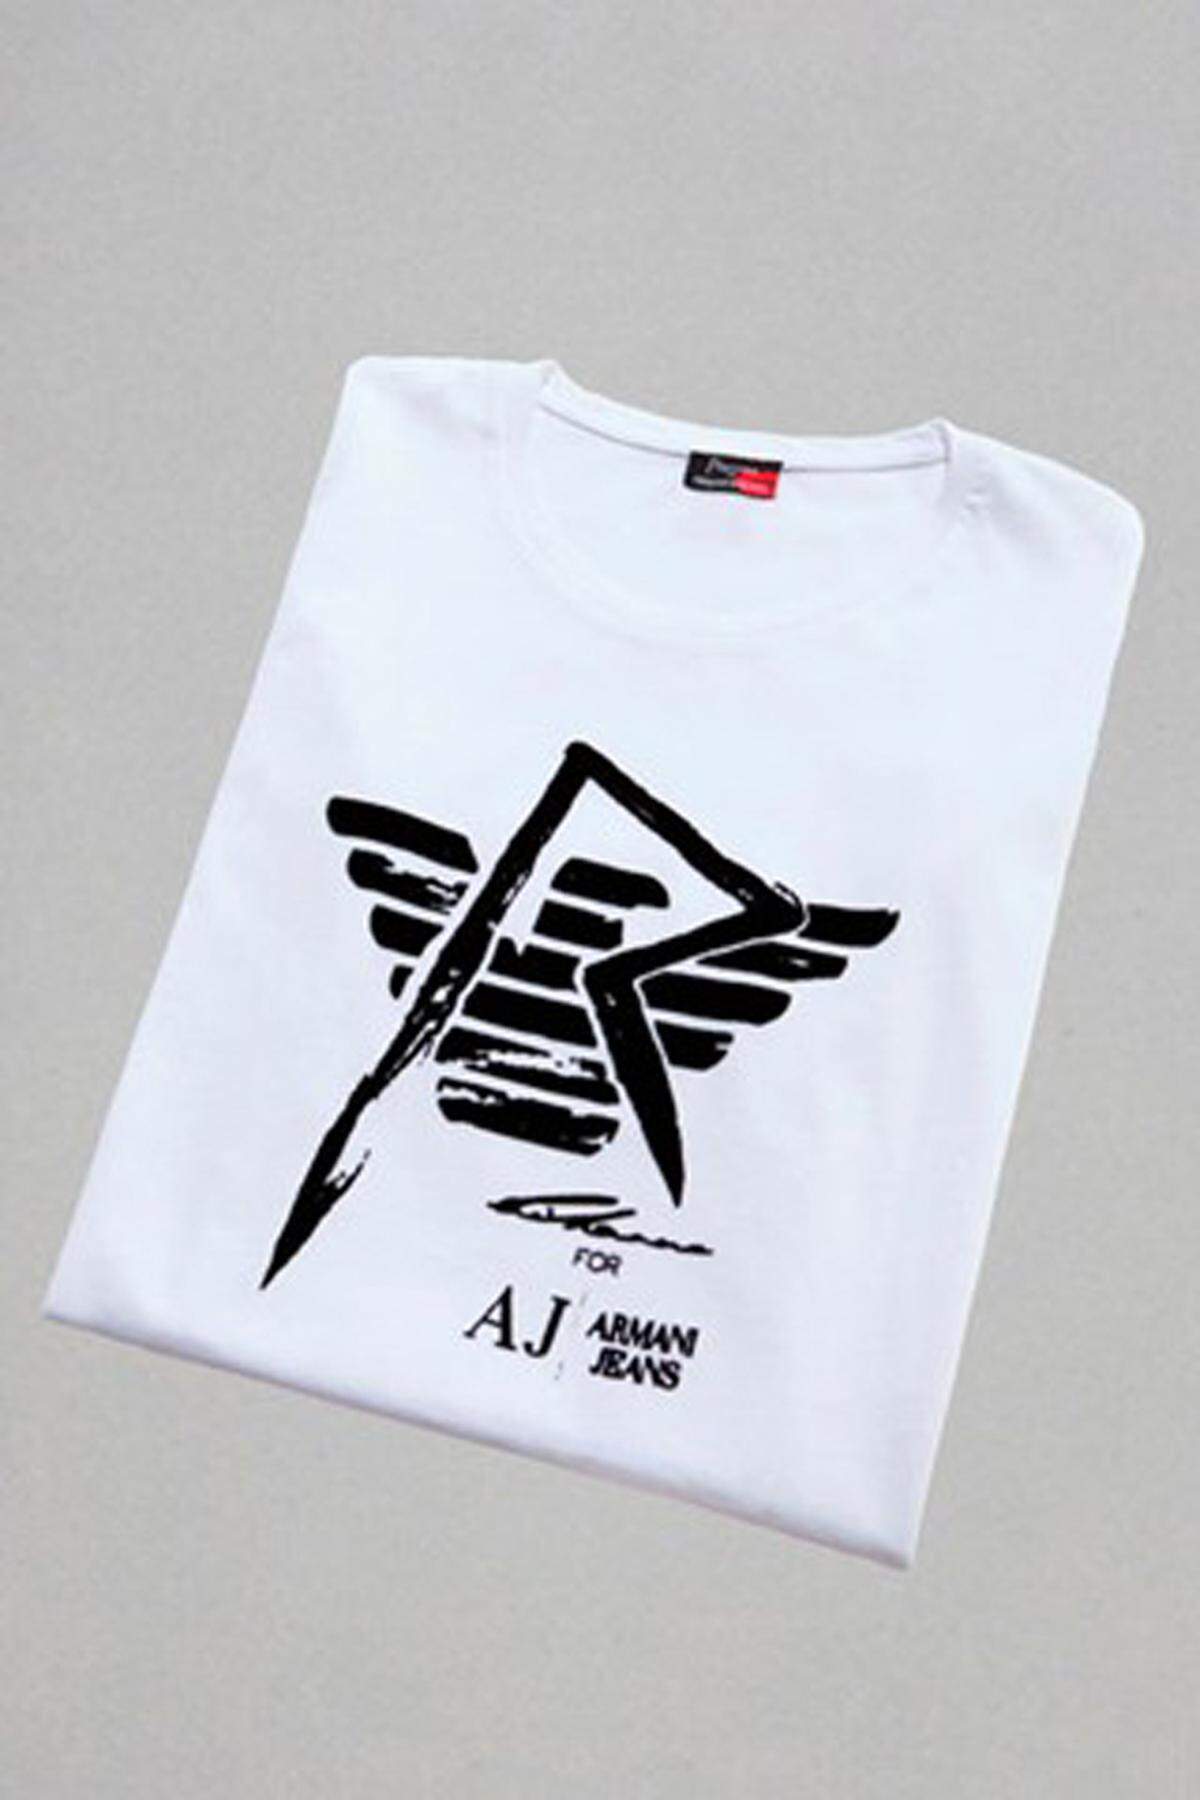 Auf dem klassischen T-Shirt sind die Logos von Rihanna und Armani miteinander kombiniert.